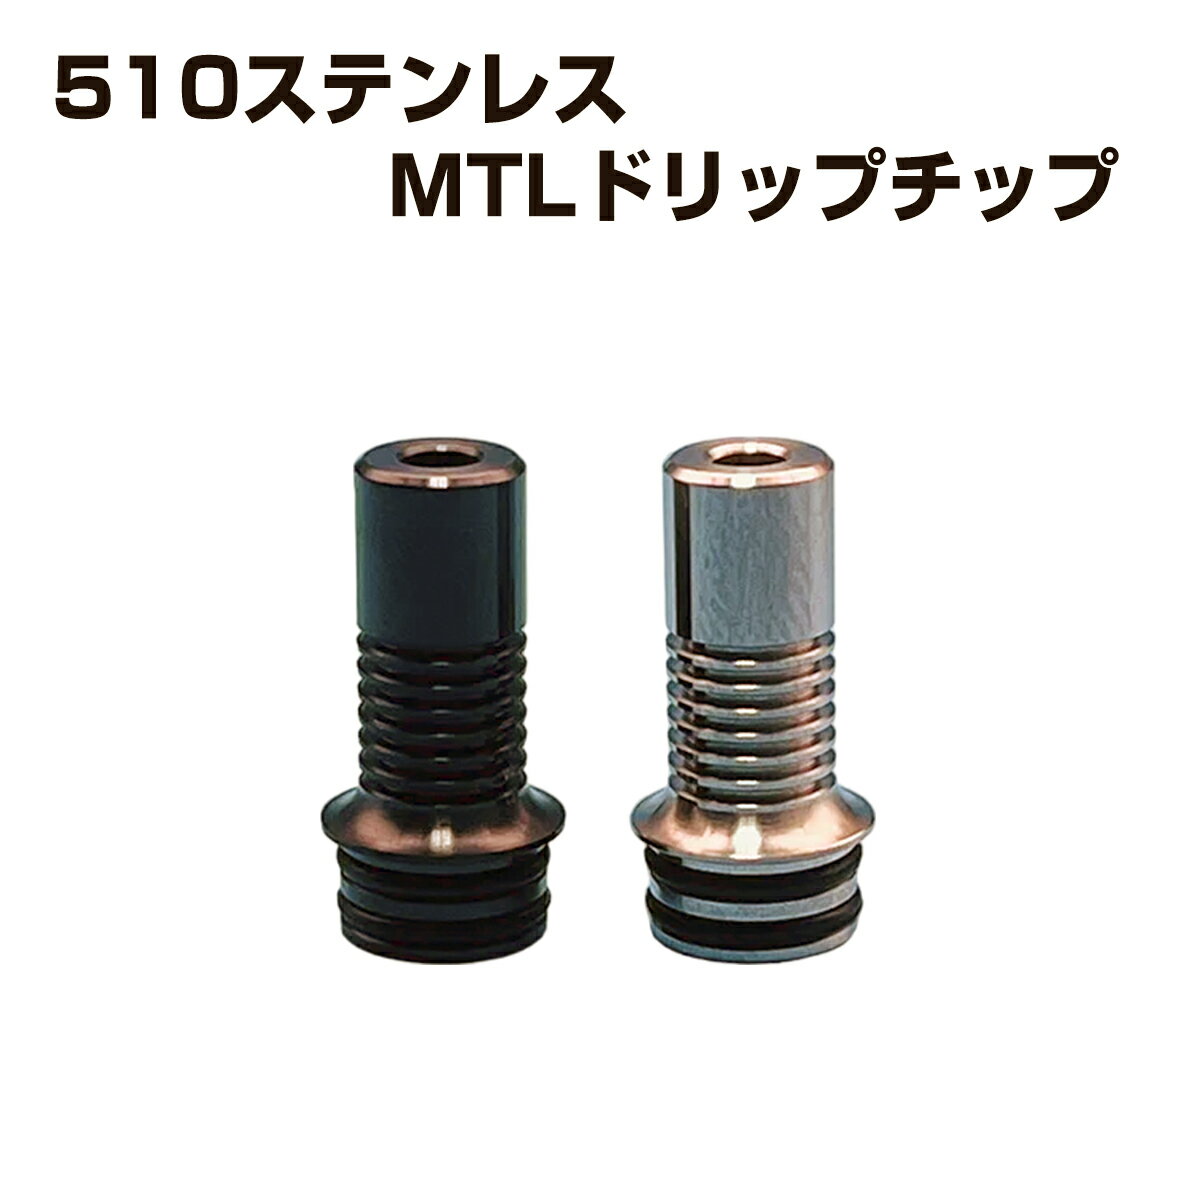 スタイリッシュな外観が特徴の510ドリップチップです。 細い内径でMTLでの使用に最適です。 長さで蒸気を冷やし、スピッドバックや跳ね返りを防止できます。 510接続となりますので様々な種類のアトマイザーに使用頂けます。 サイズ 高さ20mm×直径6.5mm（ボトム10mm） 素材 ステンレス 付属品 Oリング×2